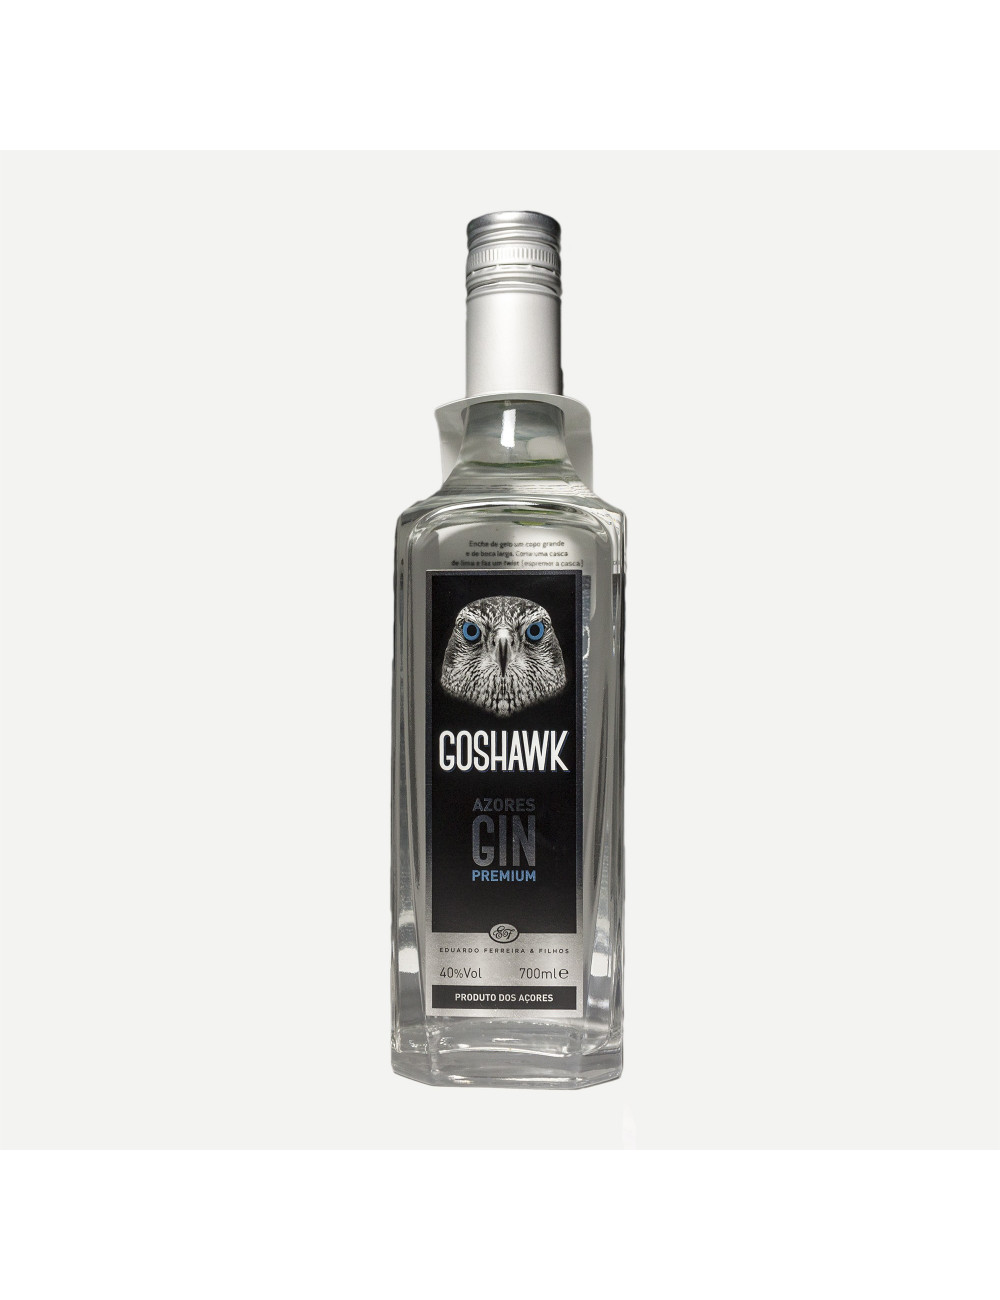 Goshhawk Gin Premium